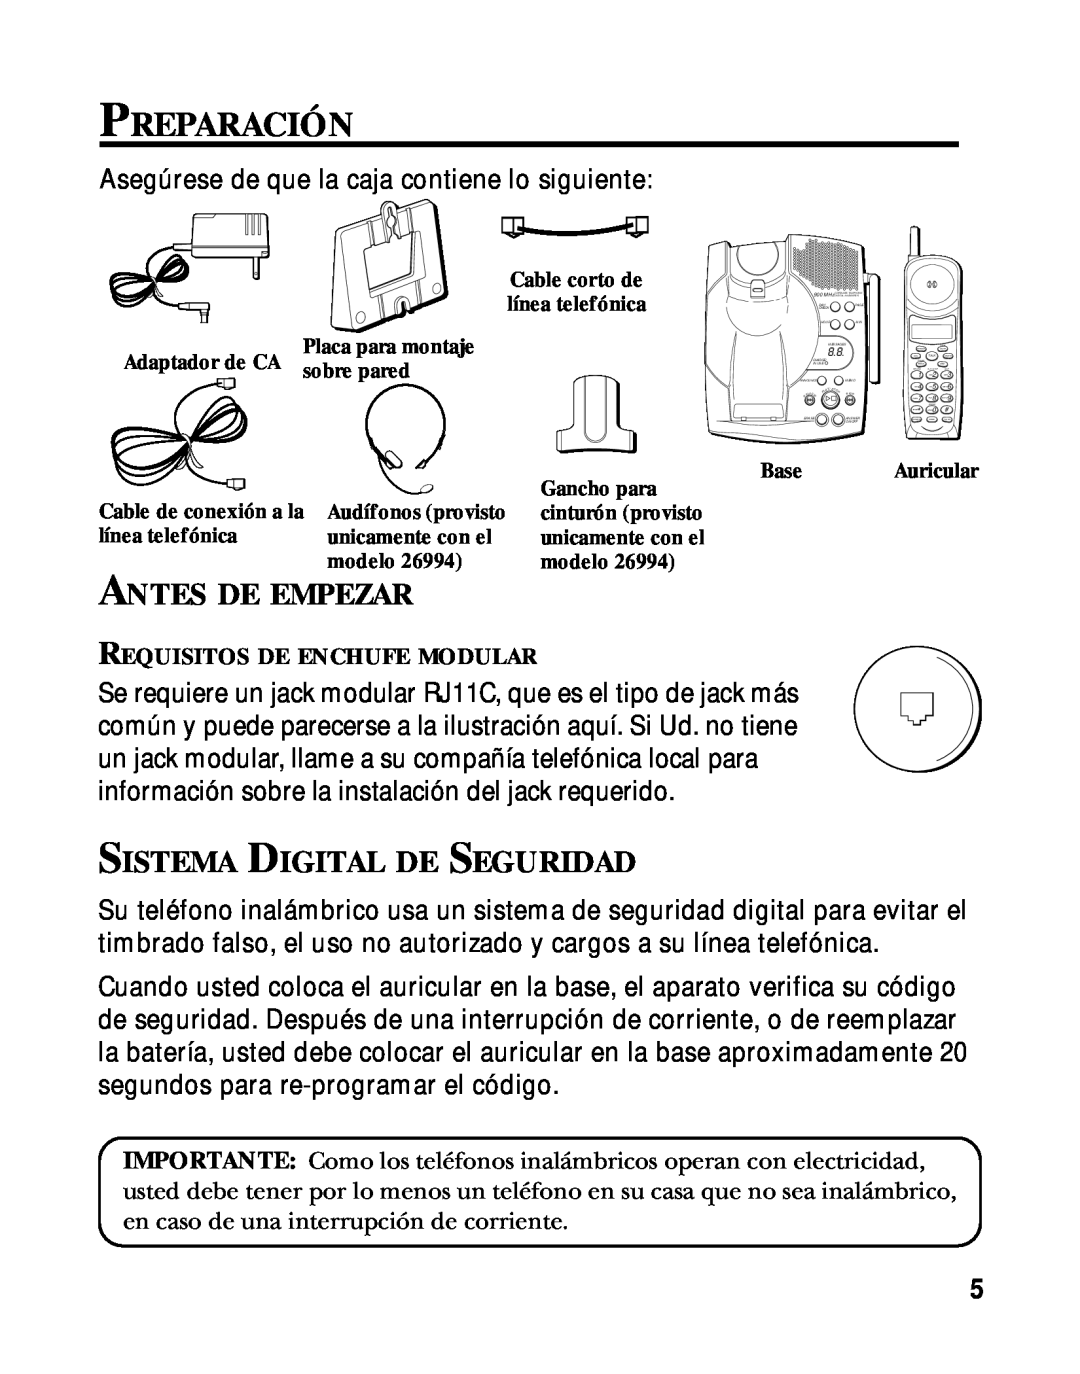 RCA 900 MHz manual Preparación, Antes De Empezar, Sistema Digital De Seguridad 